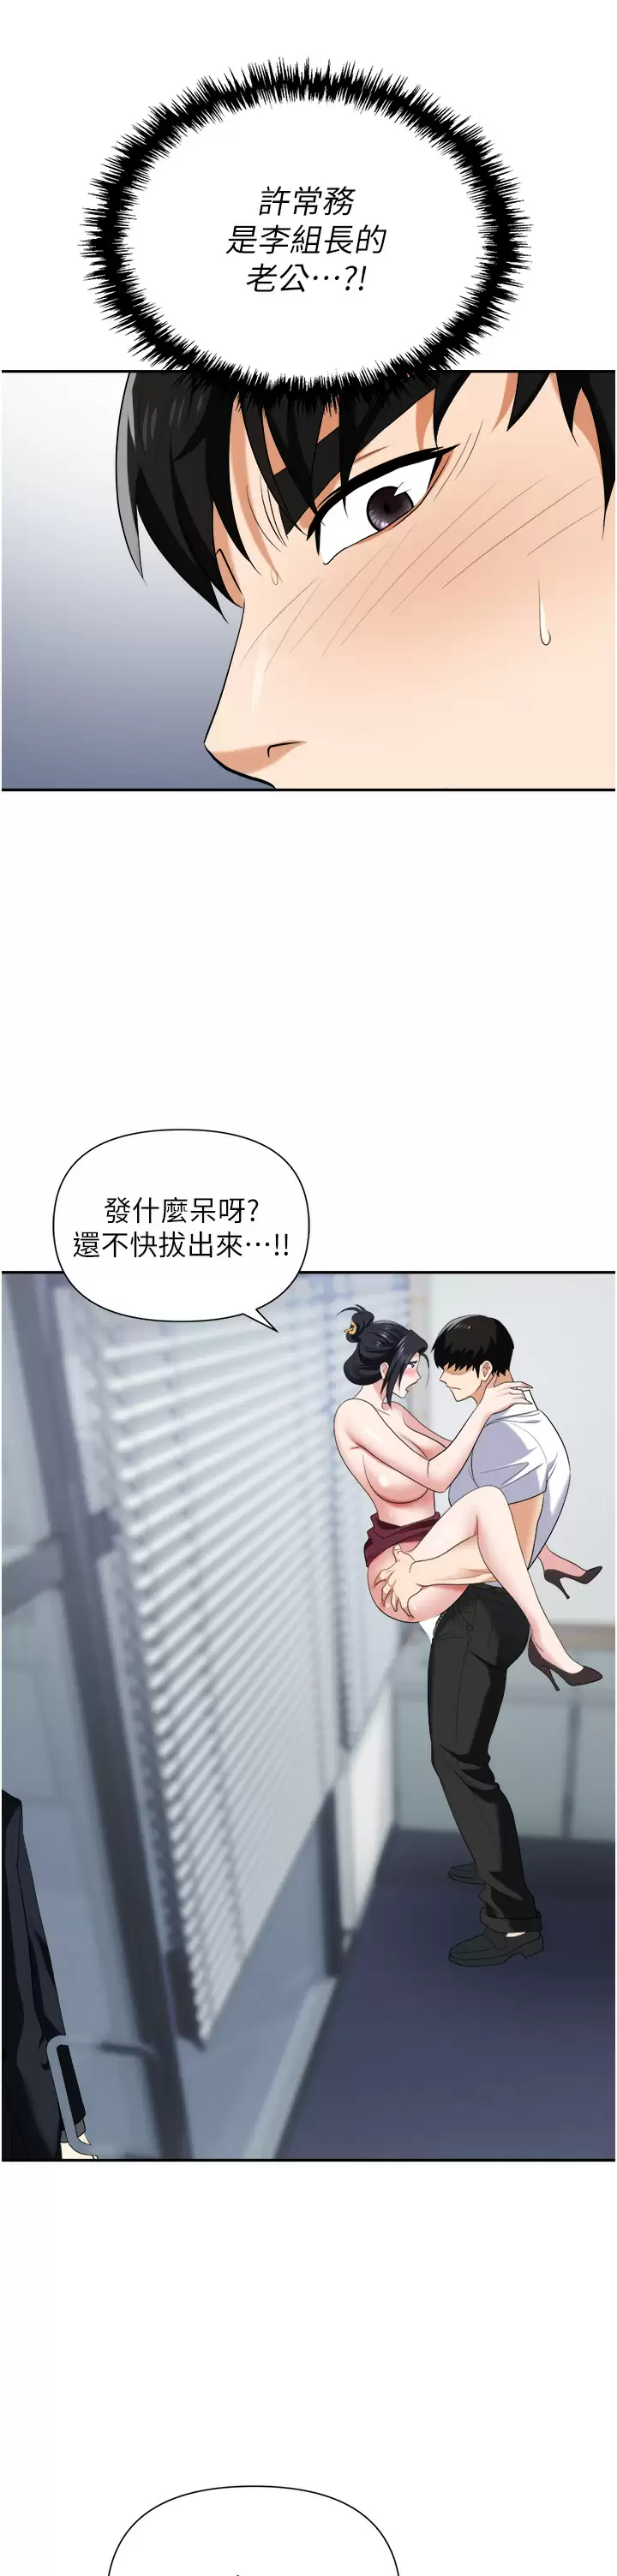 韩国污漫画 職場陷阱 第19话 刺激不已的办公室偷情 27